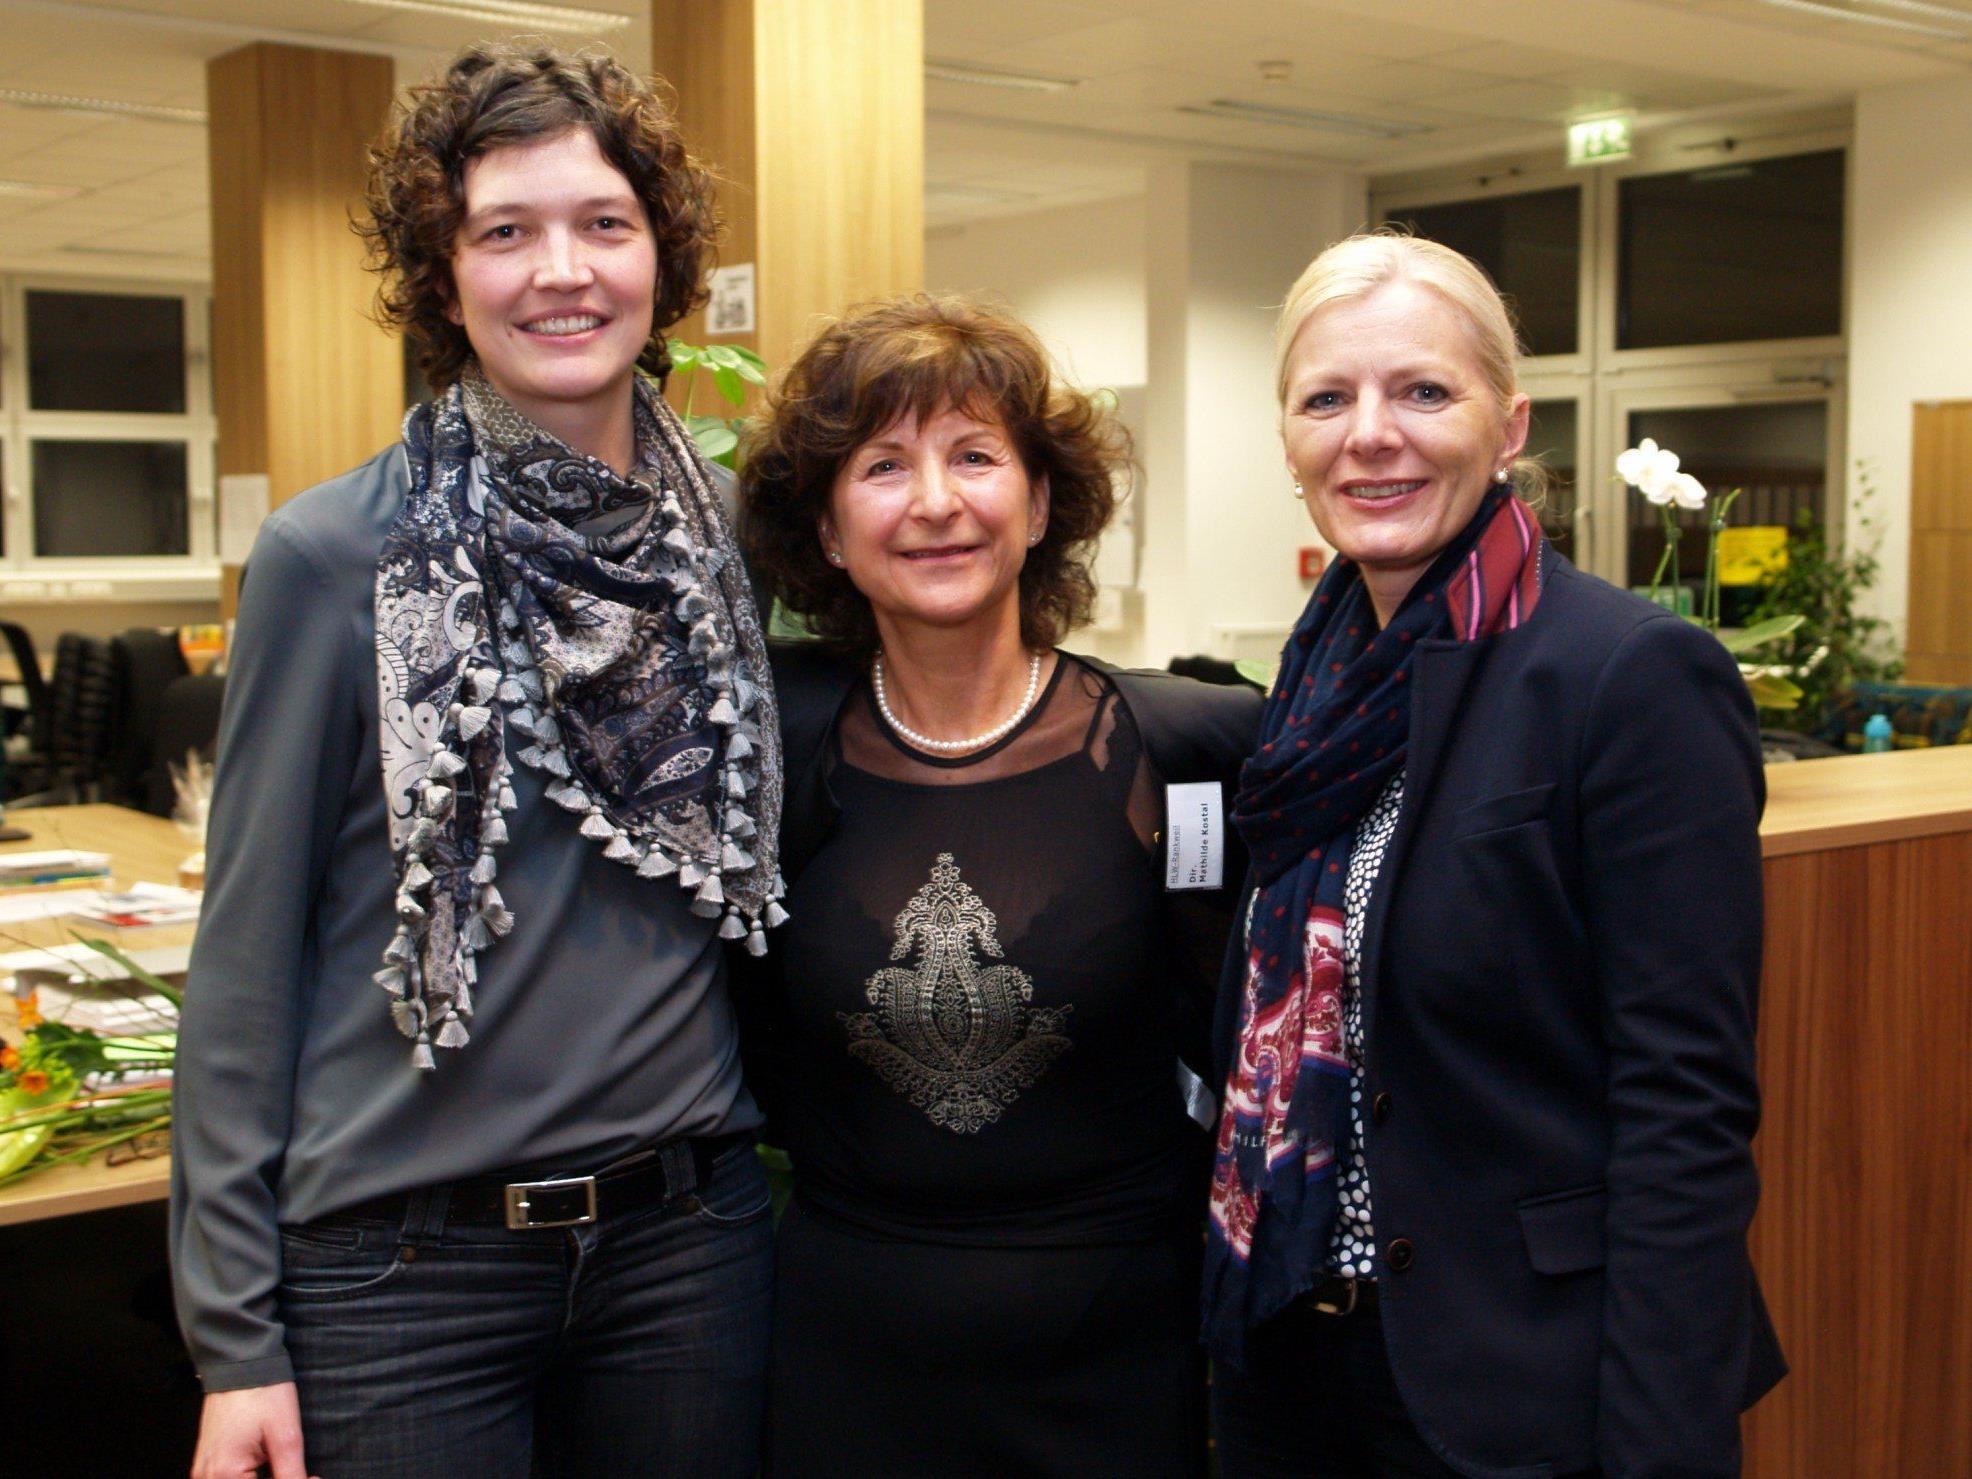 Direktorin Mathilde Kostal mit den Referentinnen Judith Zeiner und Michaela Wagner bei der "Langen Nacht der HLW".